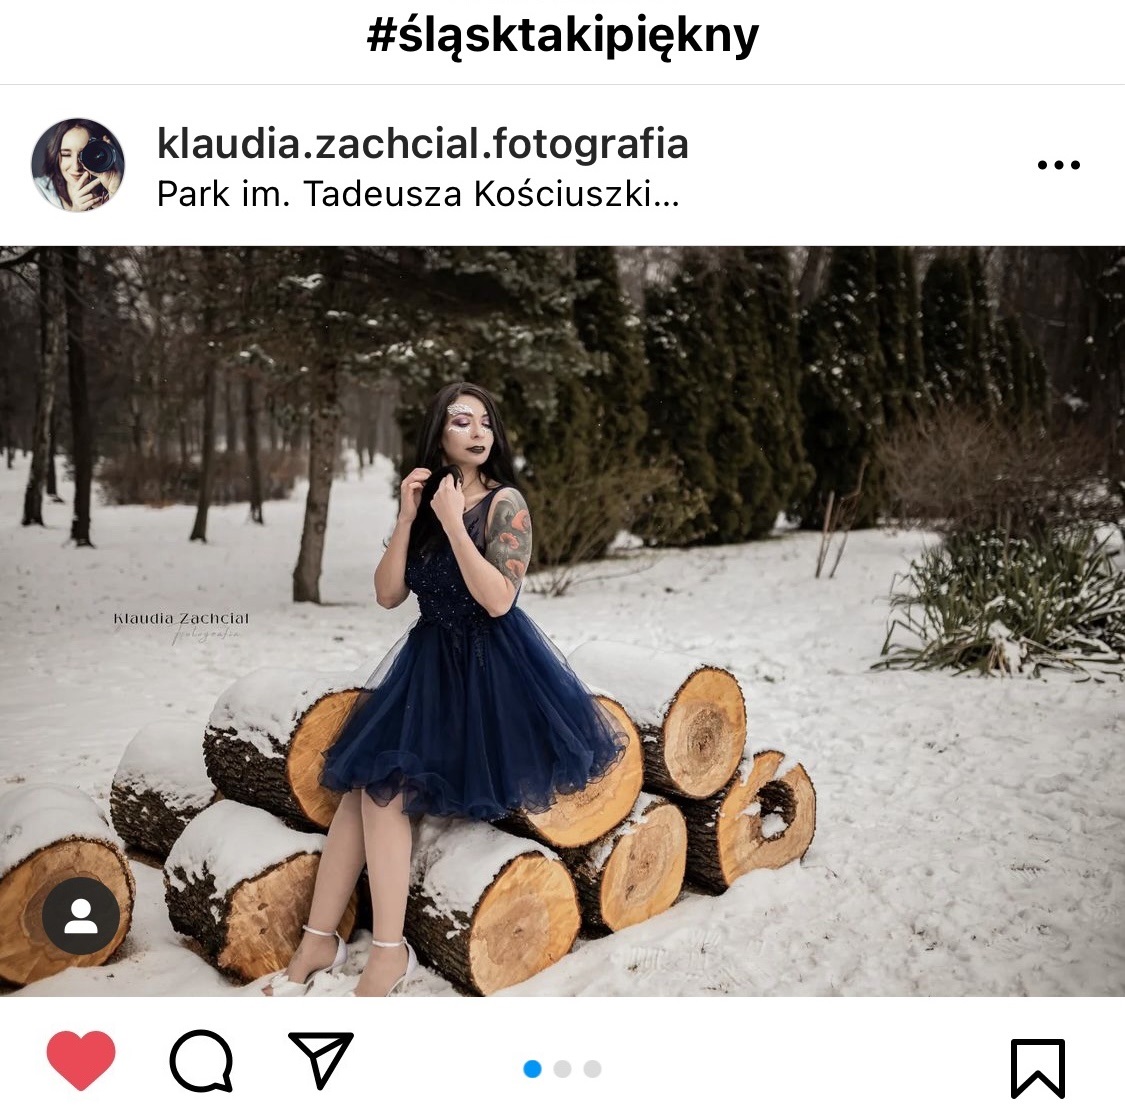 Koieta w sukience siedząca na drewnie w parku. Dookoła śnieg, ona w sukience. #śląsktakipiękny